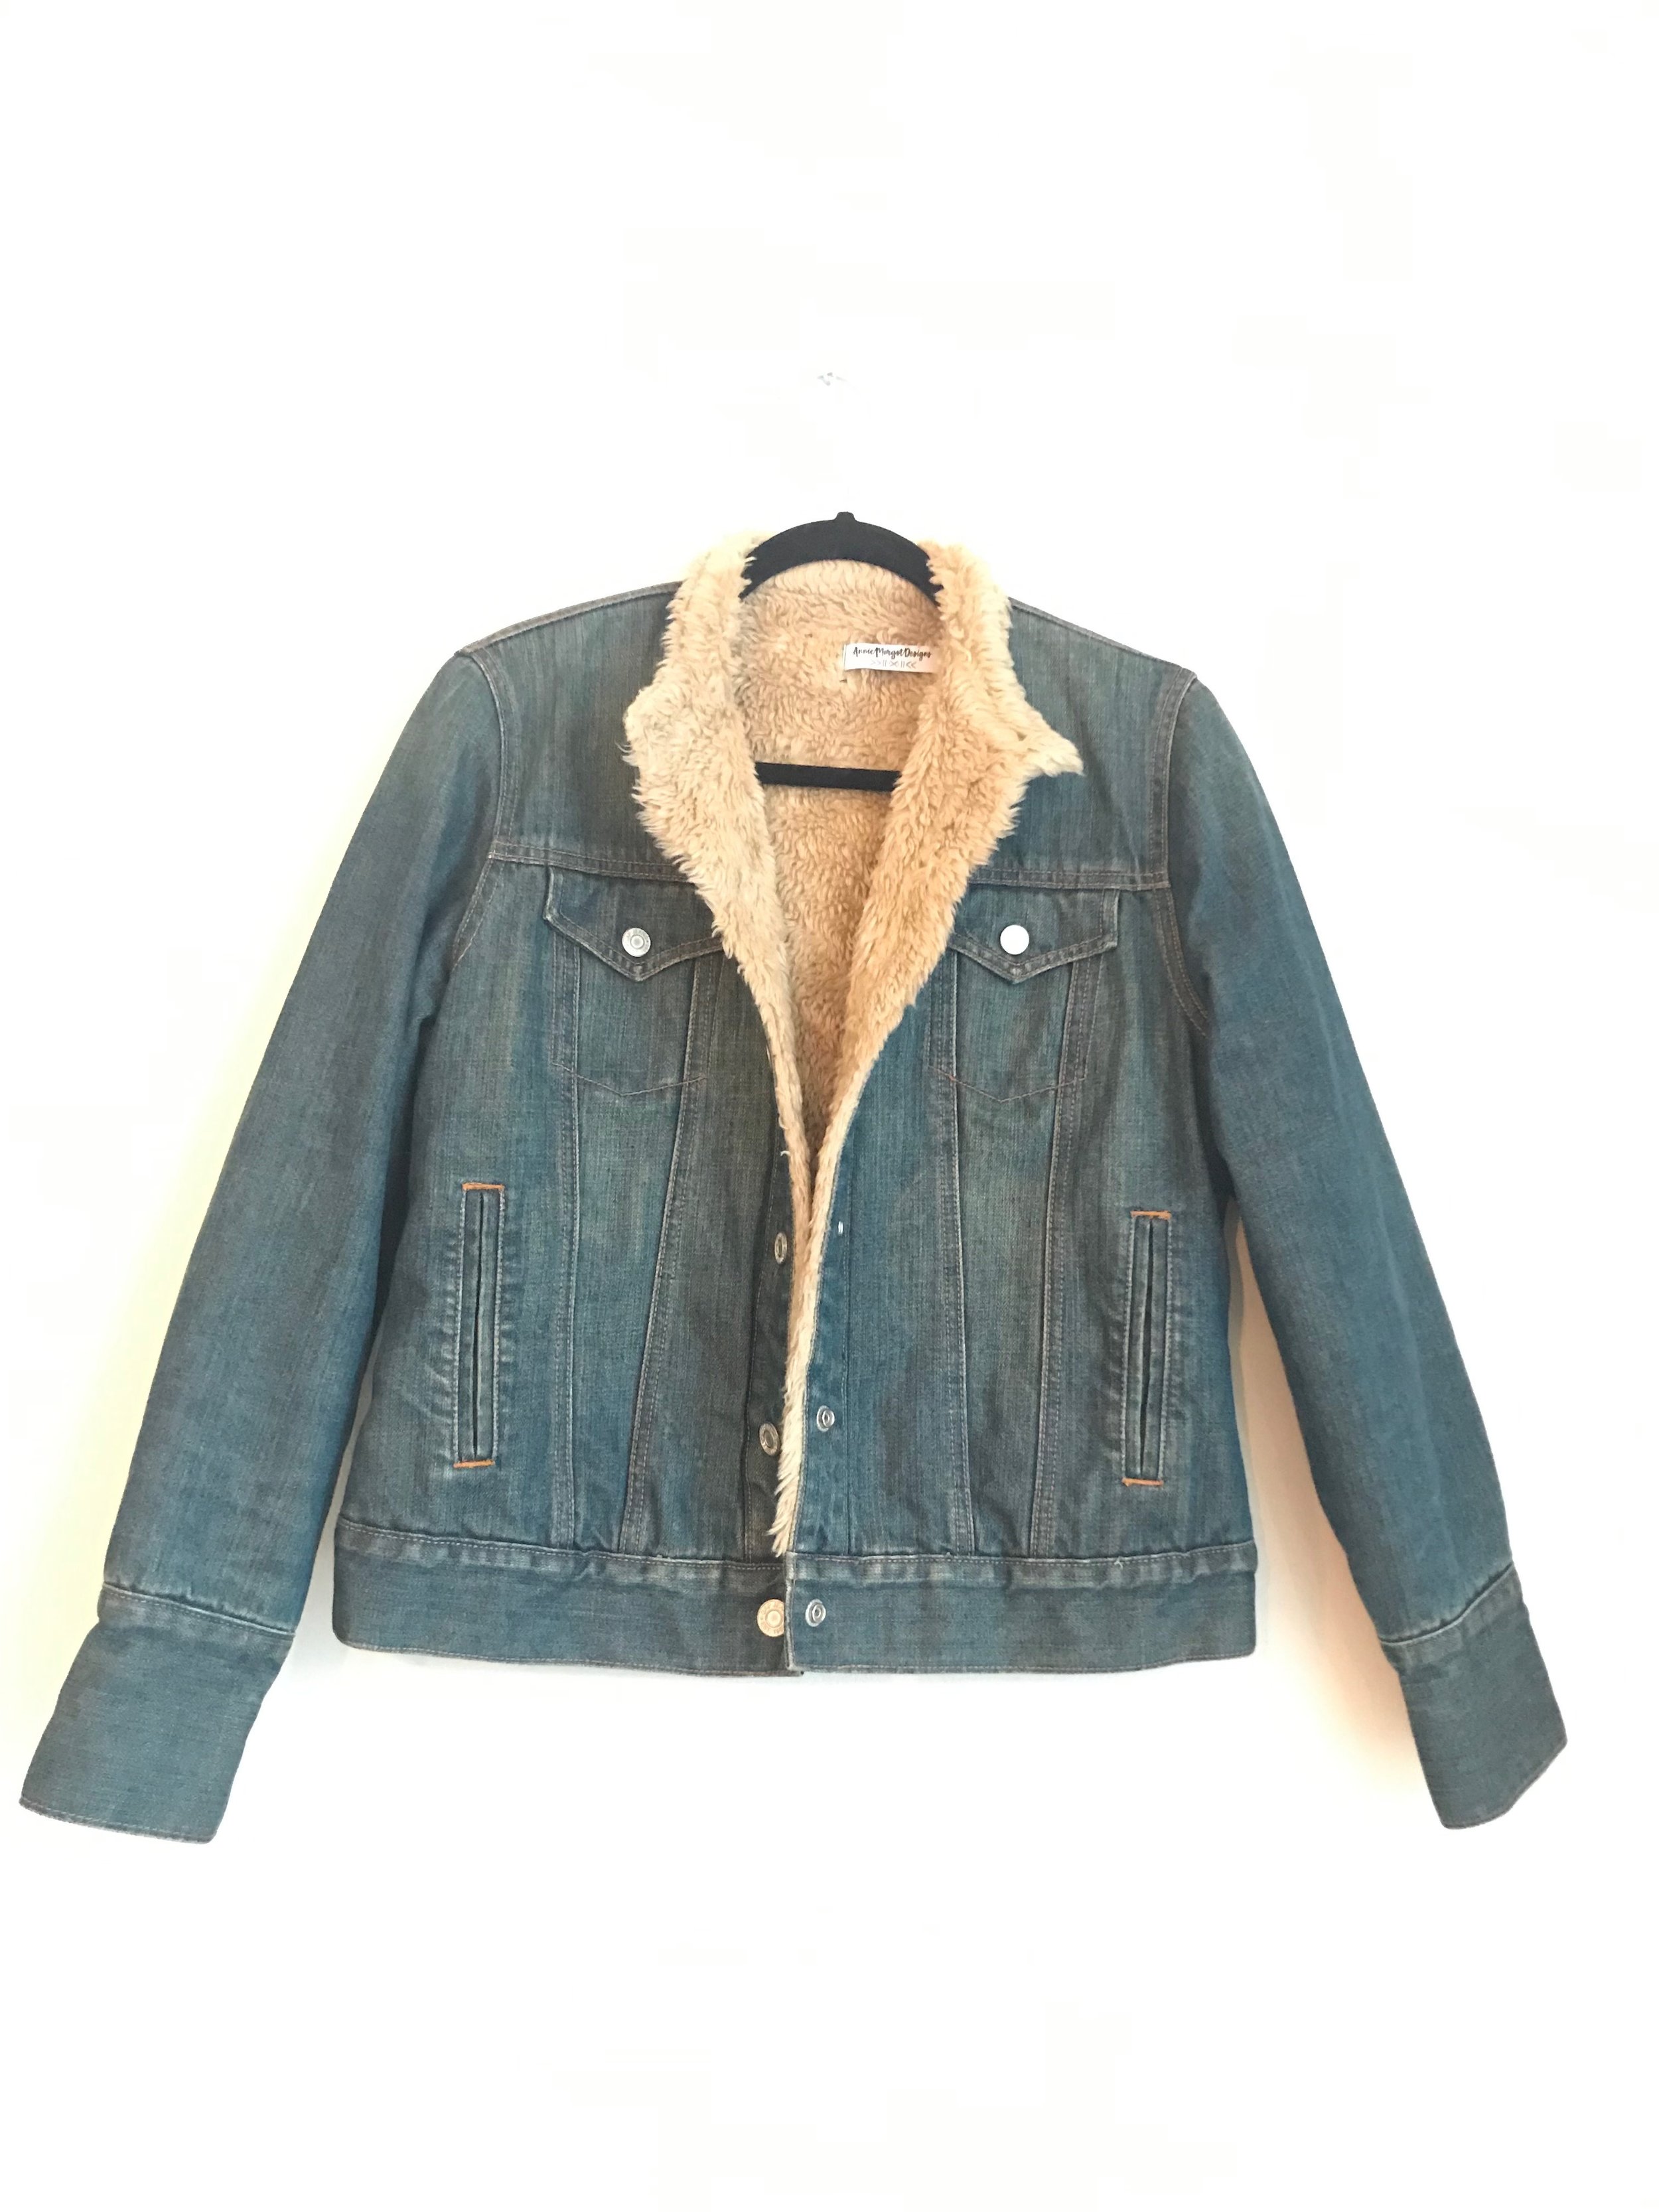 sherpa lined jean jacket